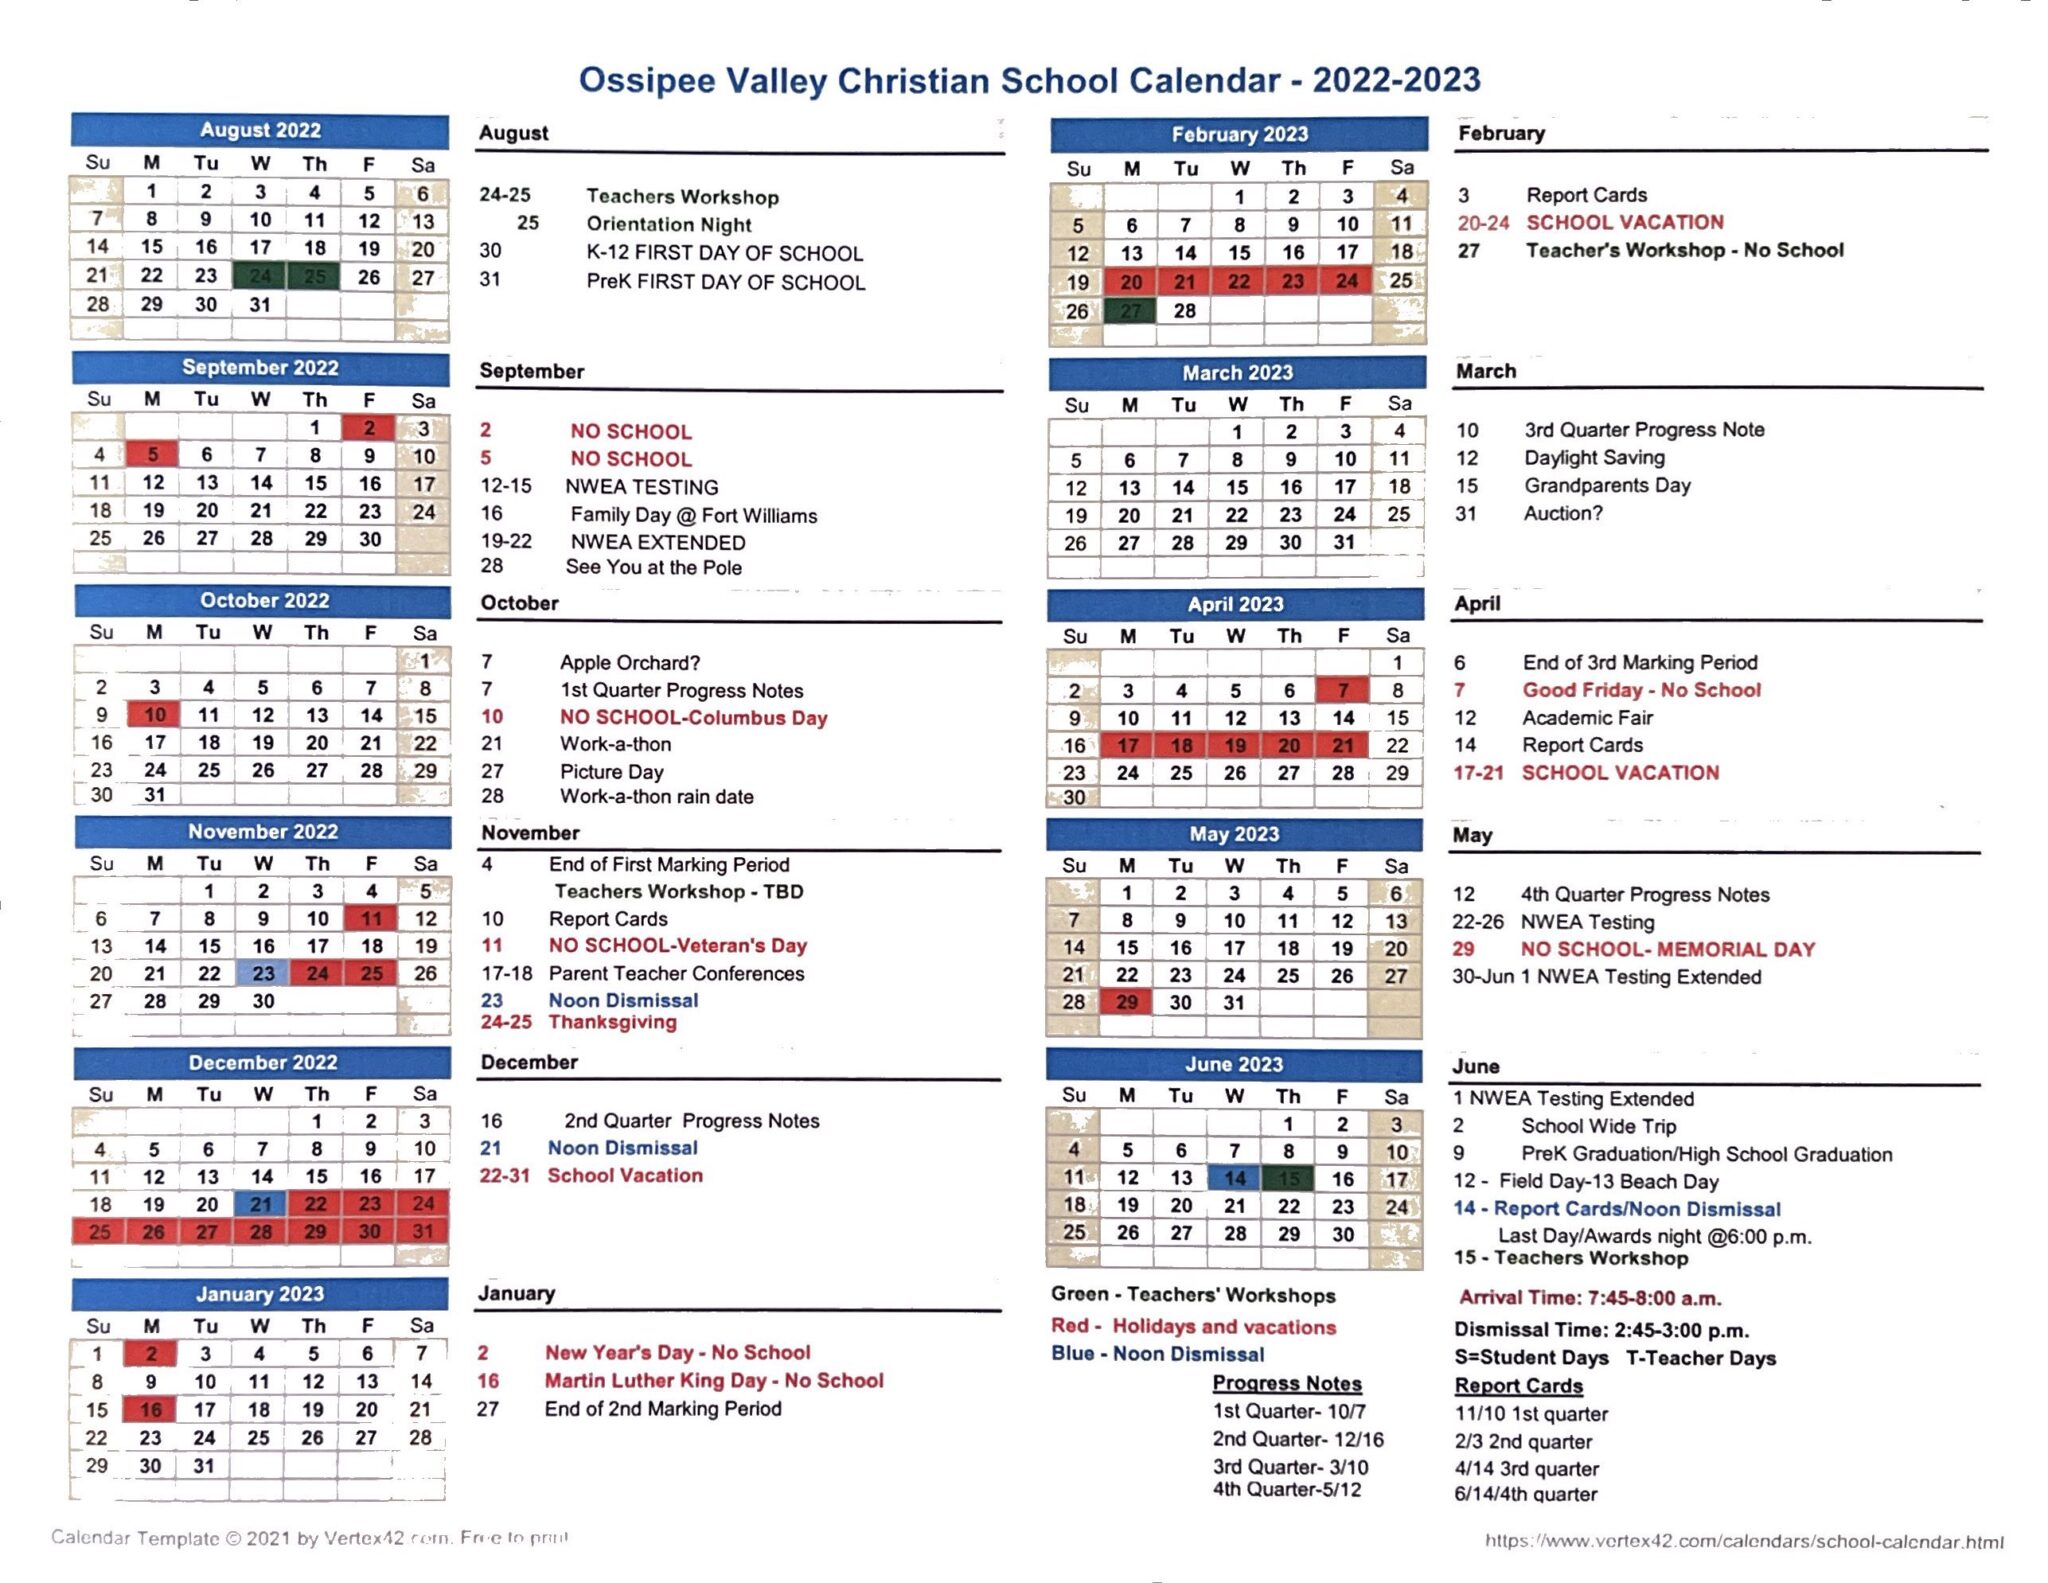 calendar-ossipee-valley-christian-school-calendar-events-activities